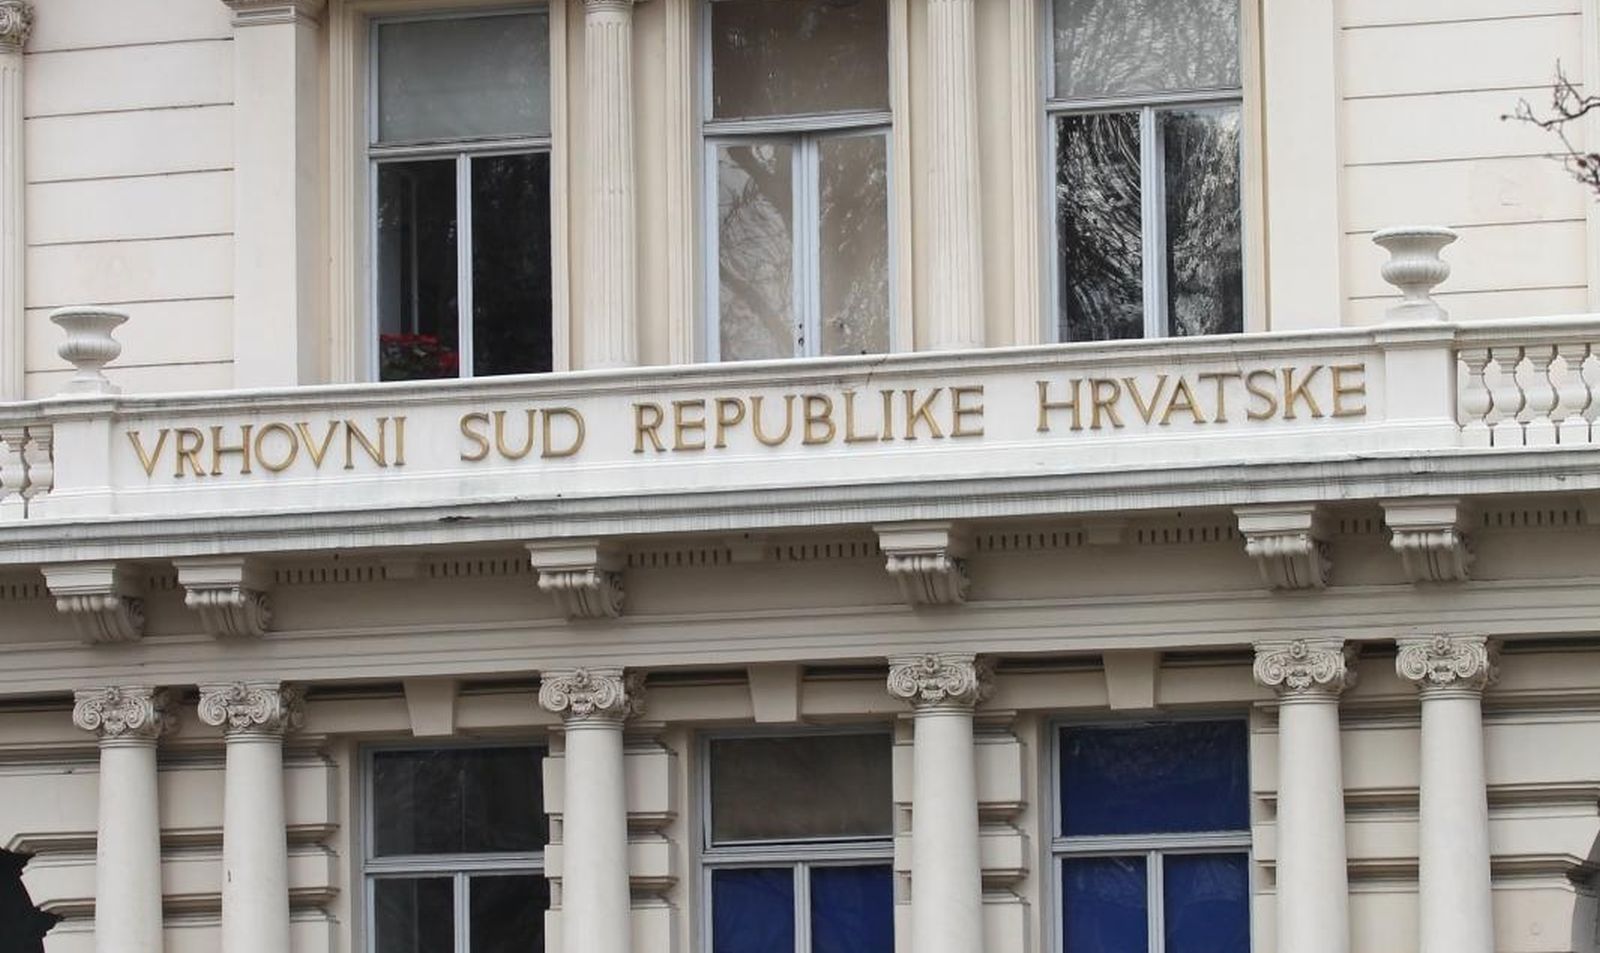 17.01.2015., Zagreb - Zgrada Vrhovnog suda Republike Hrvatske. 
Photo: Zeljko Lukunic/PIXSELL